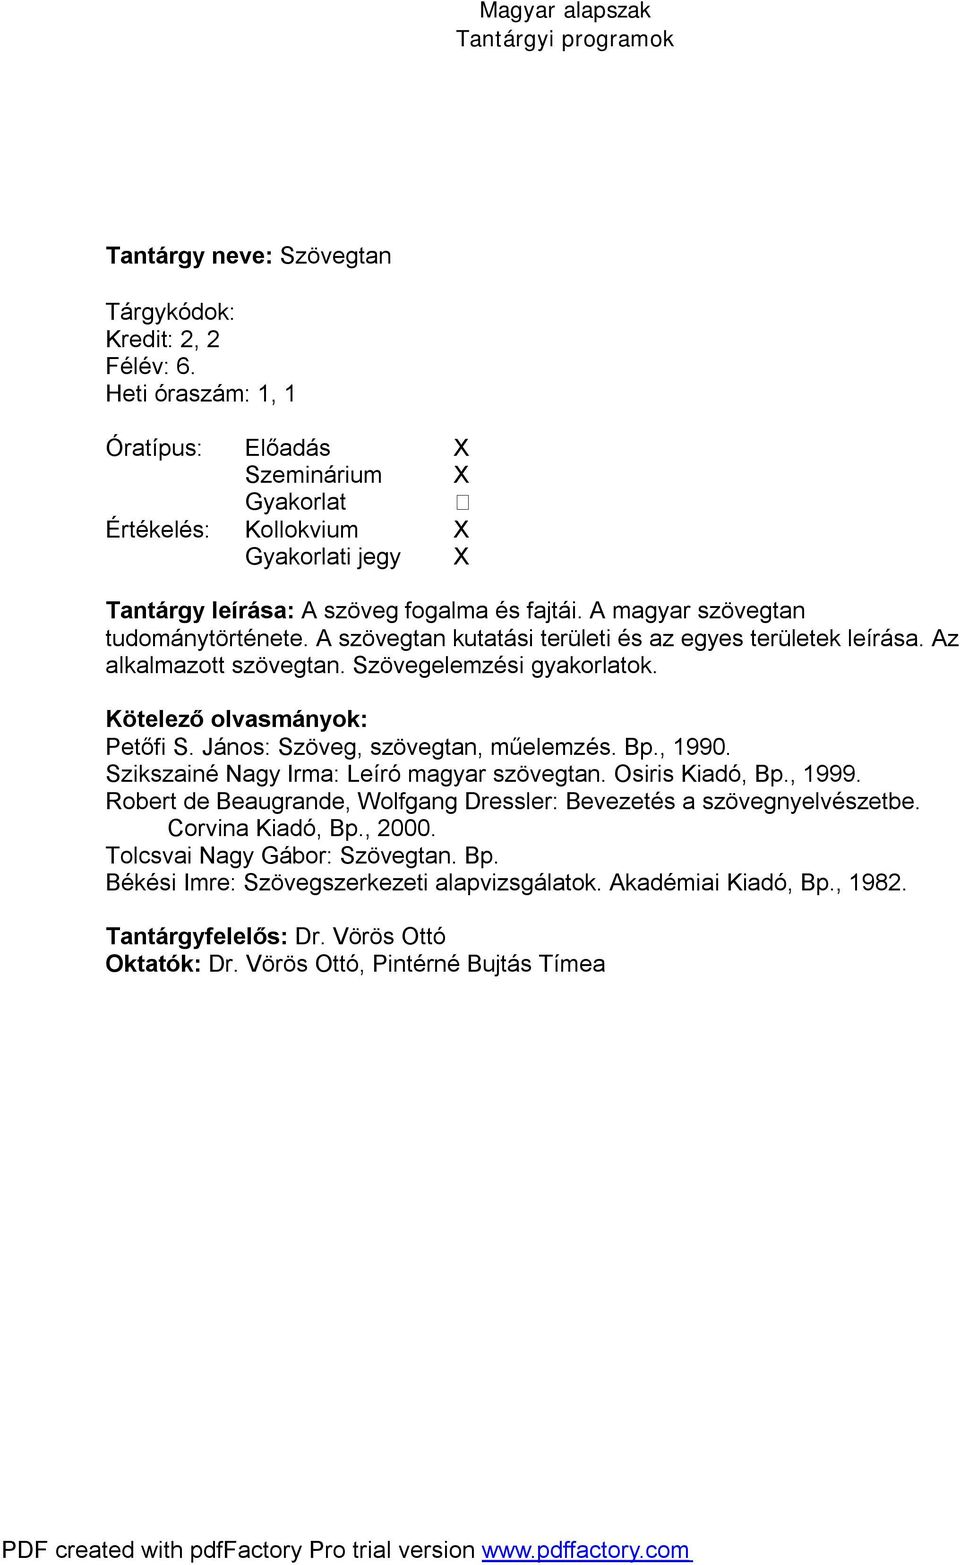 Szikszainé Nagy Irma: Leíró magyar szövegtan. Osiris Kiadó, Bp., 1999. Robert de Beaugrande, Wolfgang Dressler: Bevezetés a szövegnyelvészetbe. Corvina Kiadó, Bp., 2000.